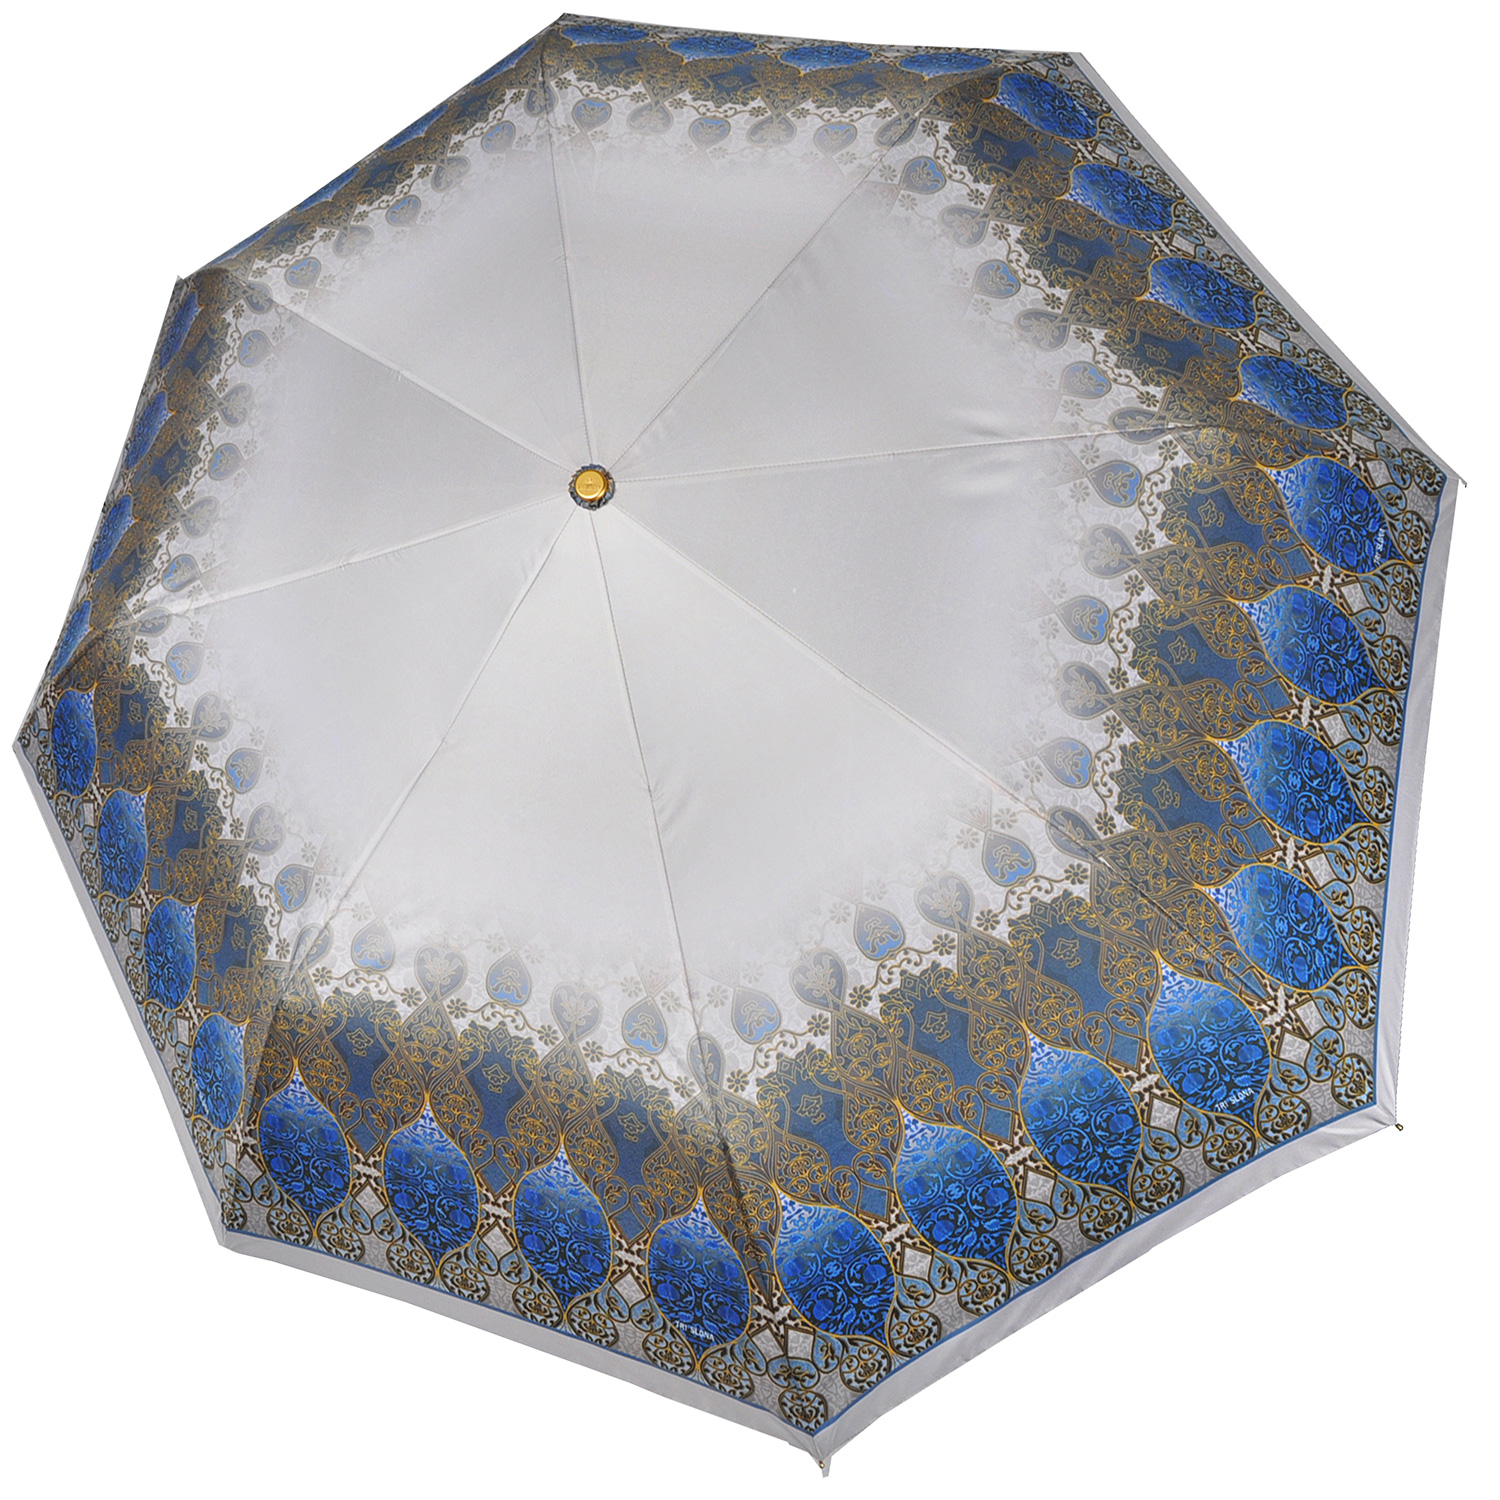 Мини-зонт из эпонжа L4700 серо-синий (полный автомат) 106 см Isotoner рис. 1